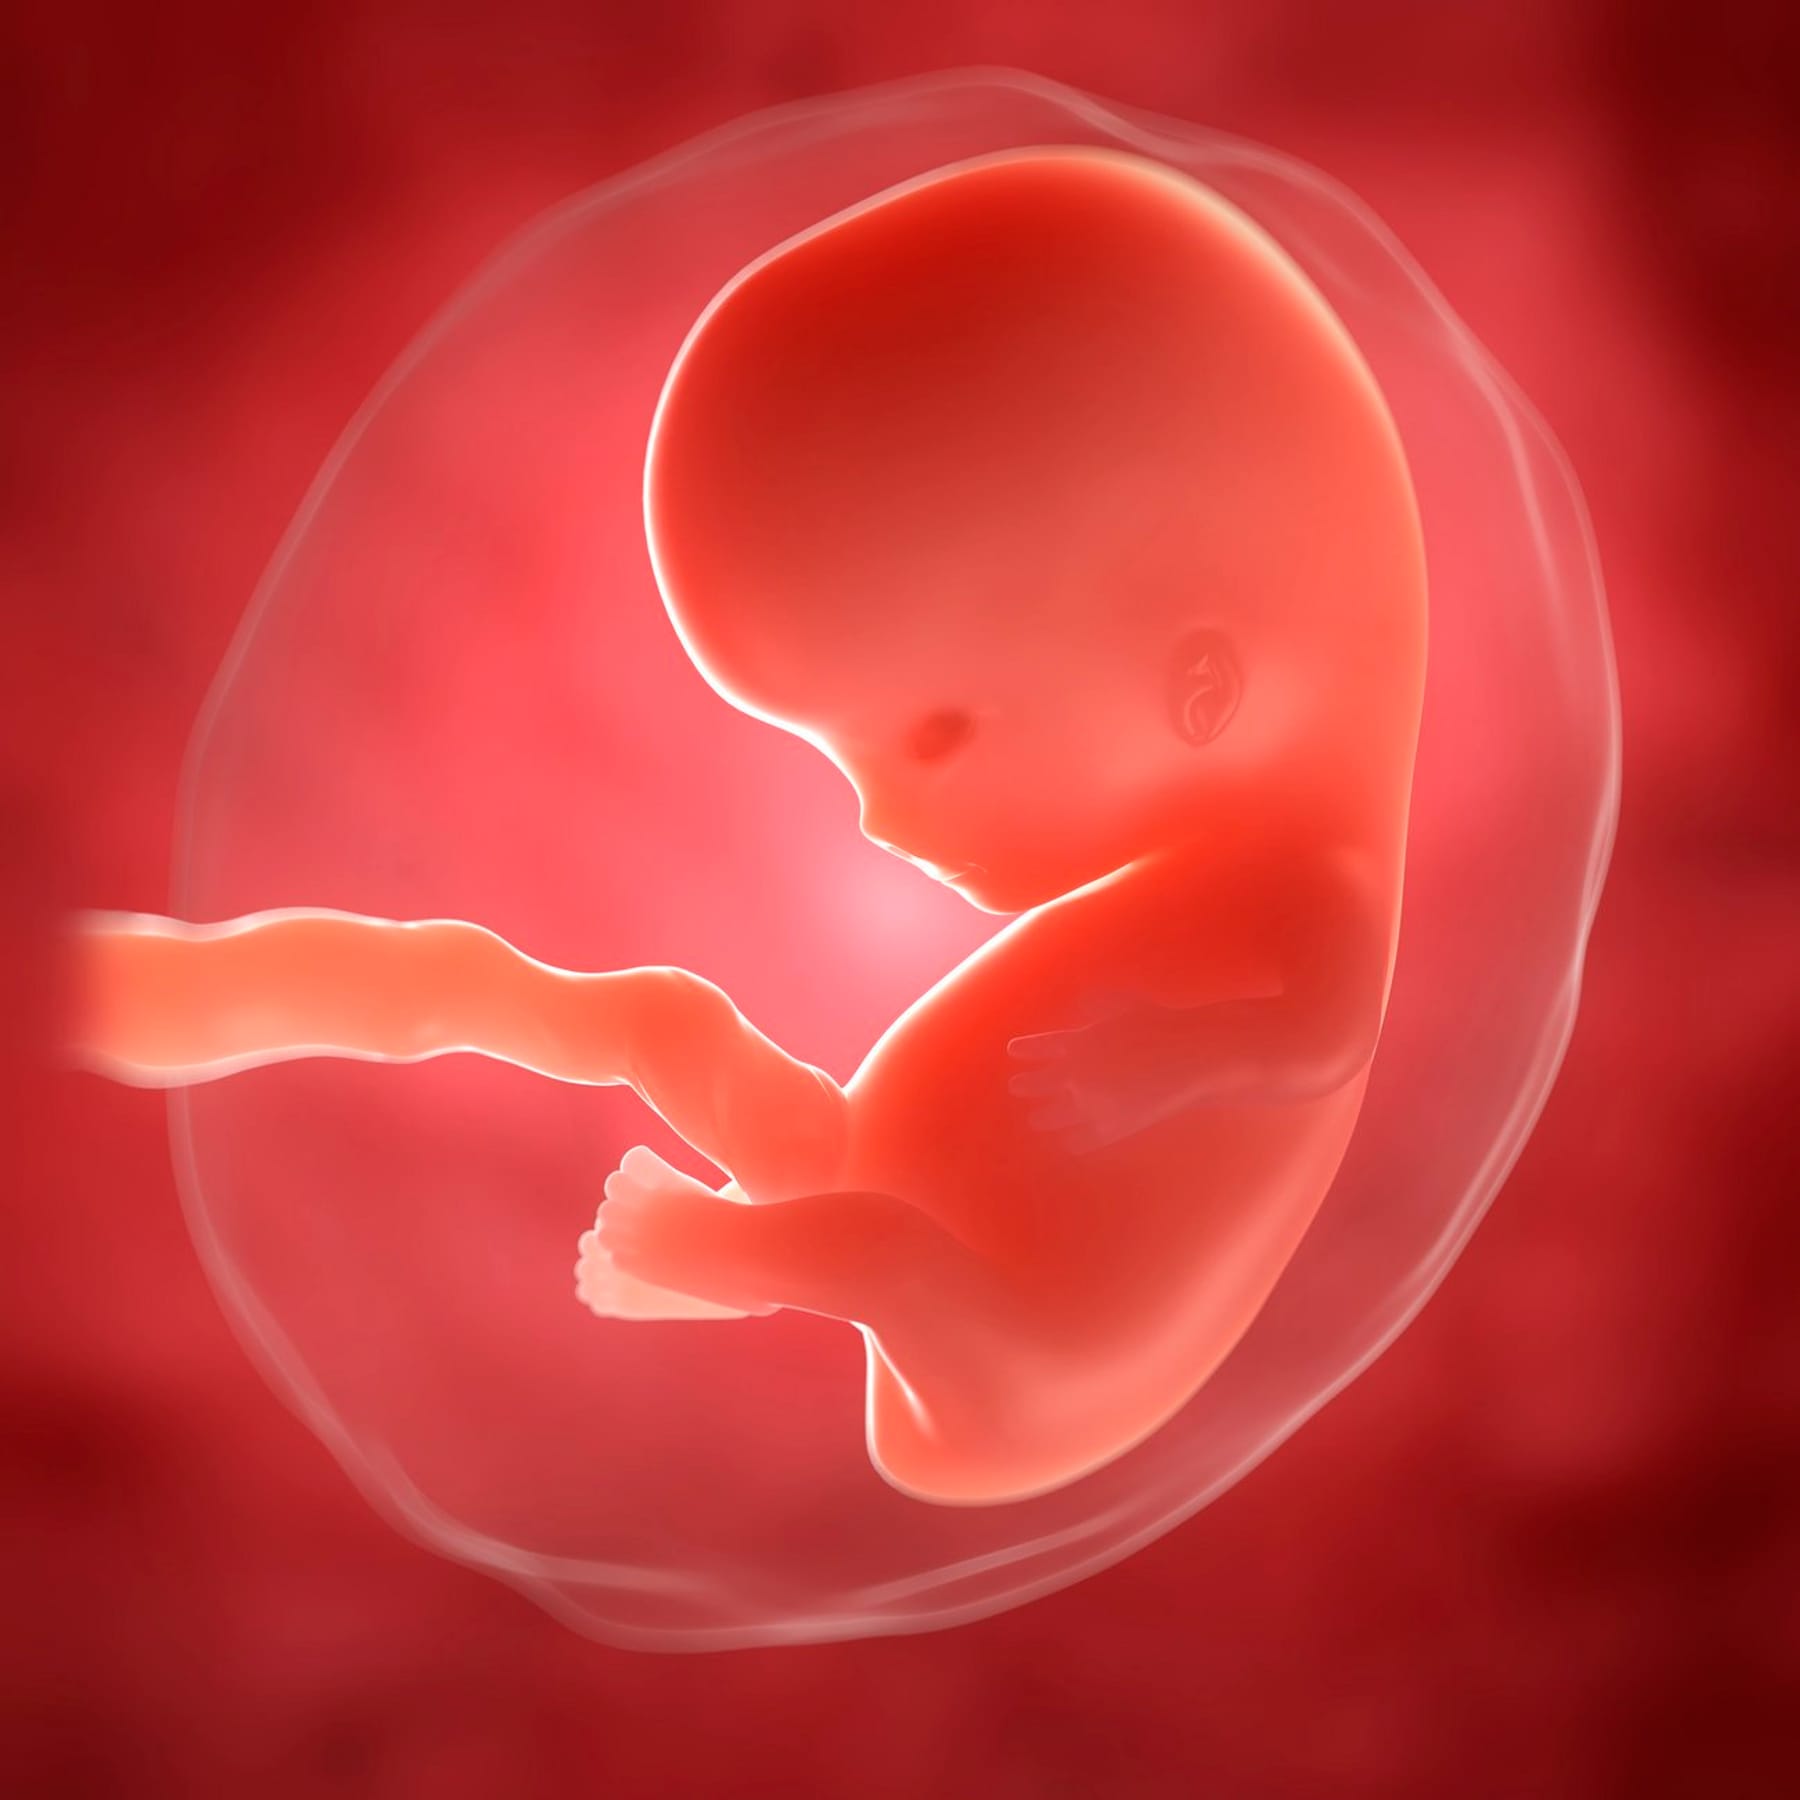 8 й недели неделе. Эмбрион на 8 неделе беременности. Плод ребенка 1 триместр.